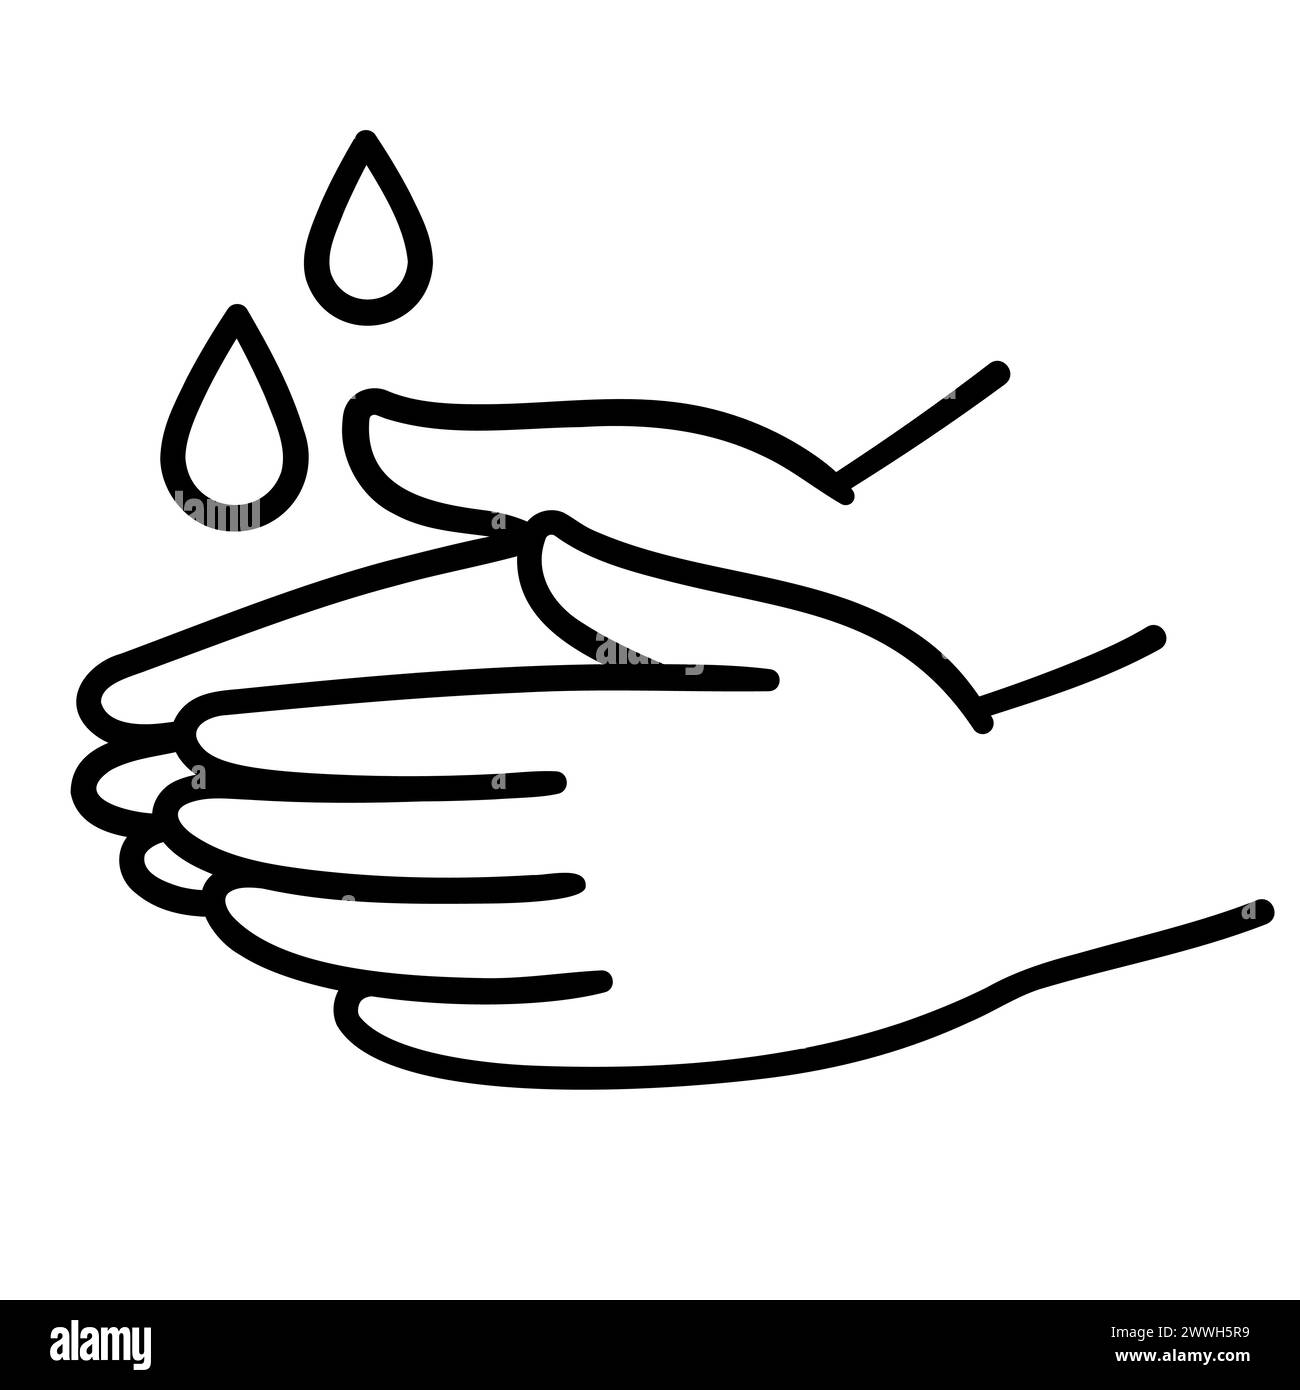 Icona del lavaggio a mano, disegnata a mano con linee bianche e nere. Due mani con gocce d'acqua. Semplice illustrazione clip art, disegno vettoriale. Illustrazione Vettoriale